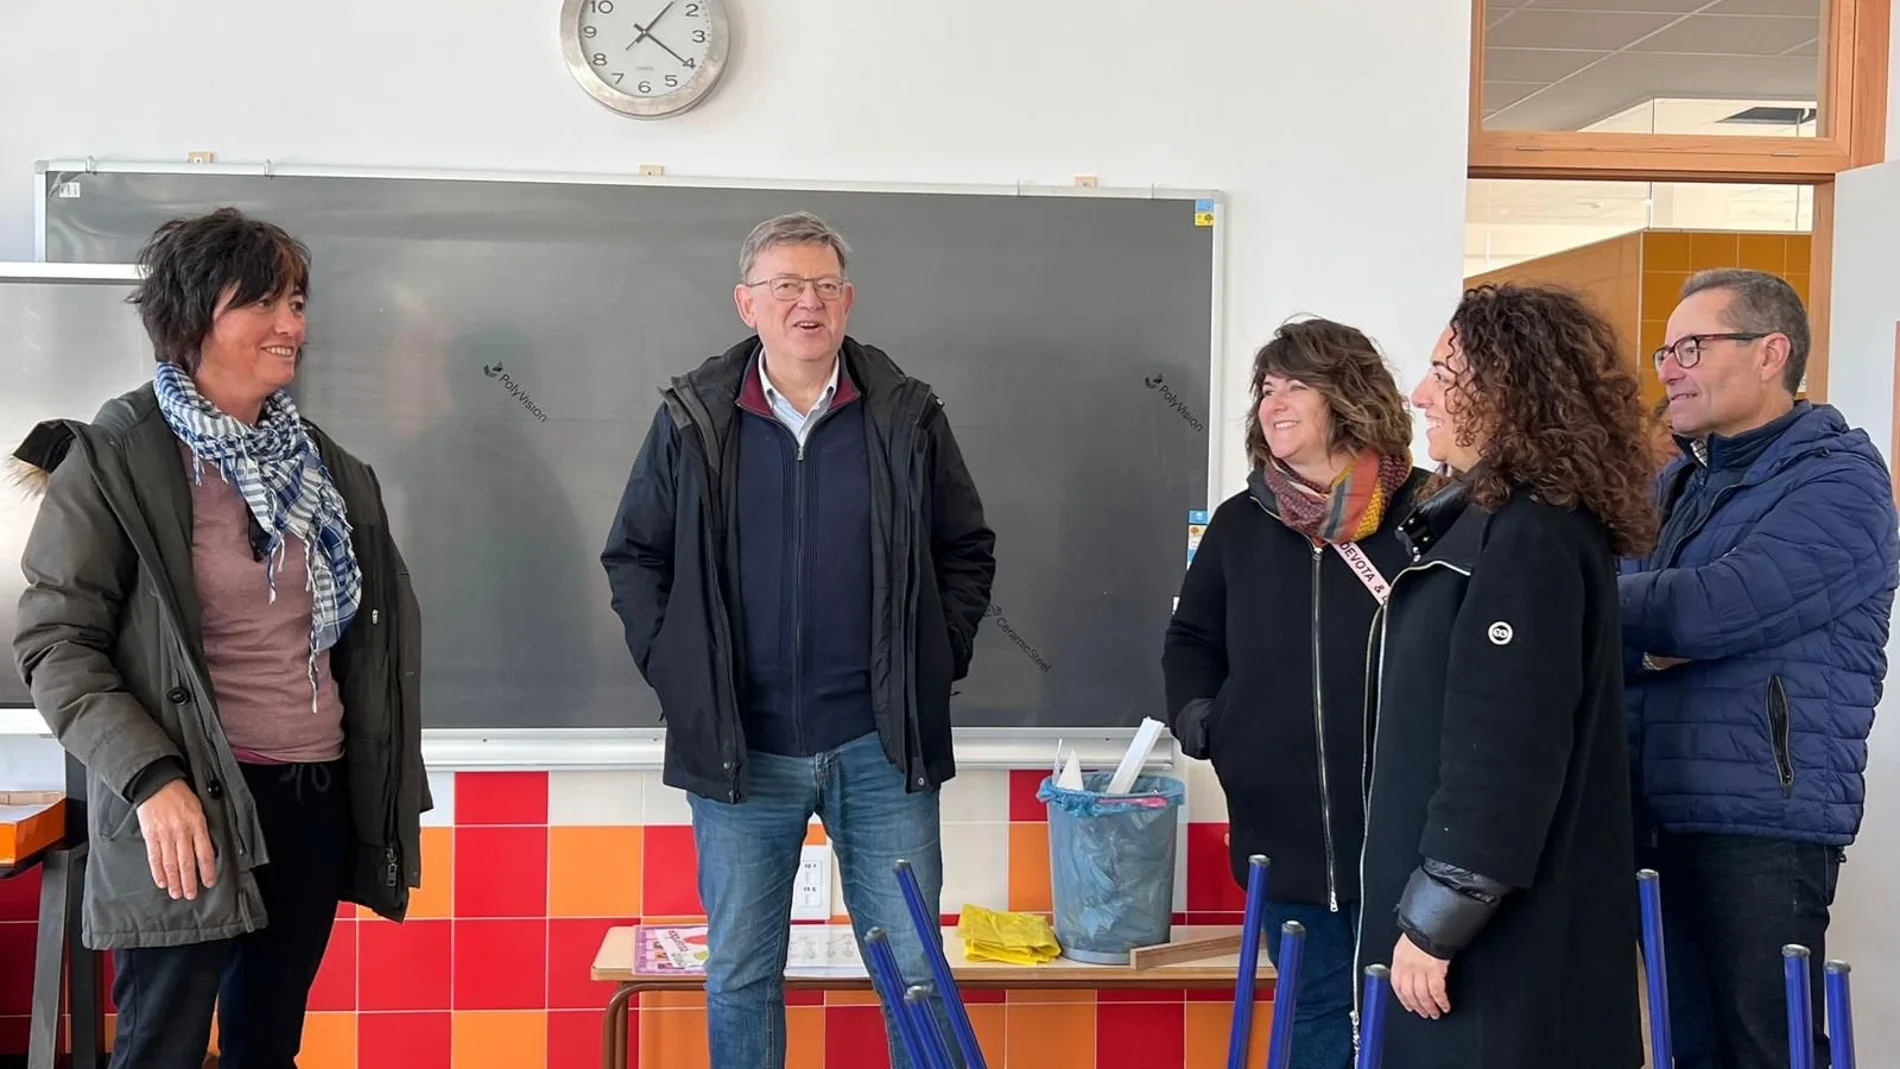 Ximo Puig visita un colegio cuya reforma se inició en su mandato